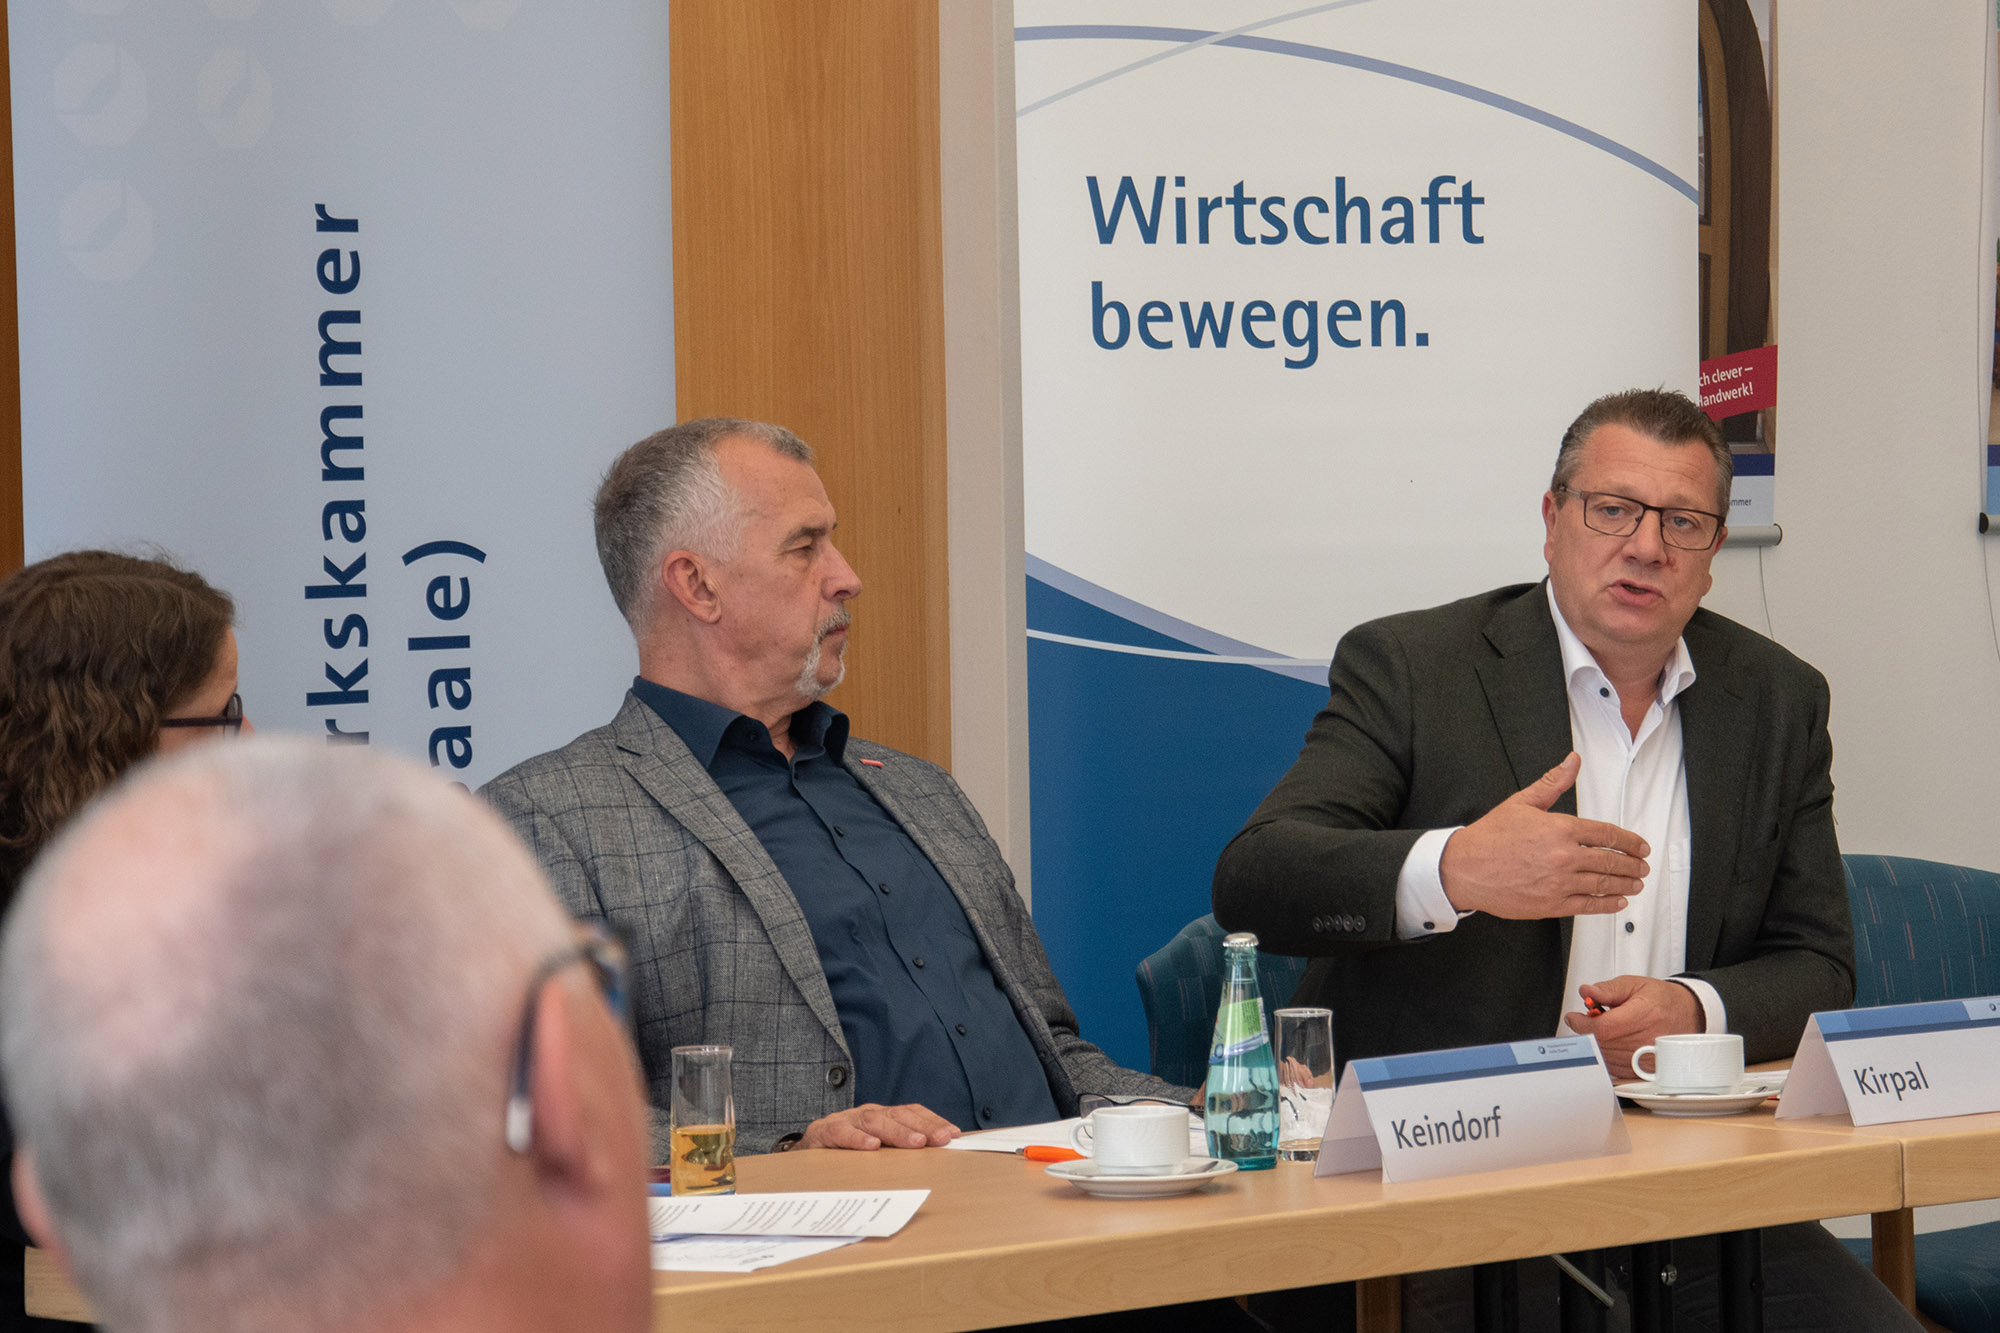 Thomas Keindorf (M.), Präsident Handwerkskammer Halle, und Kristian Kirpal, Präsident Industrie- und Handelskammer zu Leipzig, beim mitteldeutschen Konjunkturgespräch.